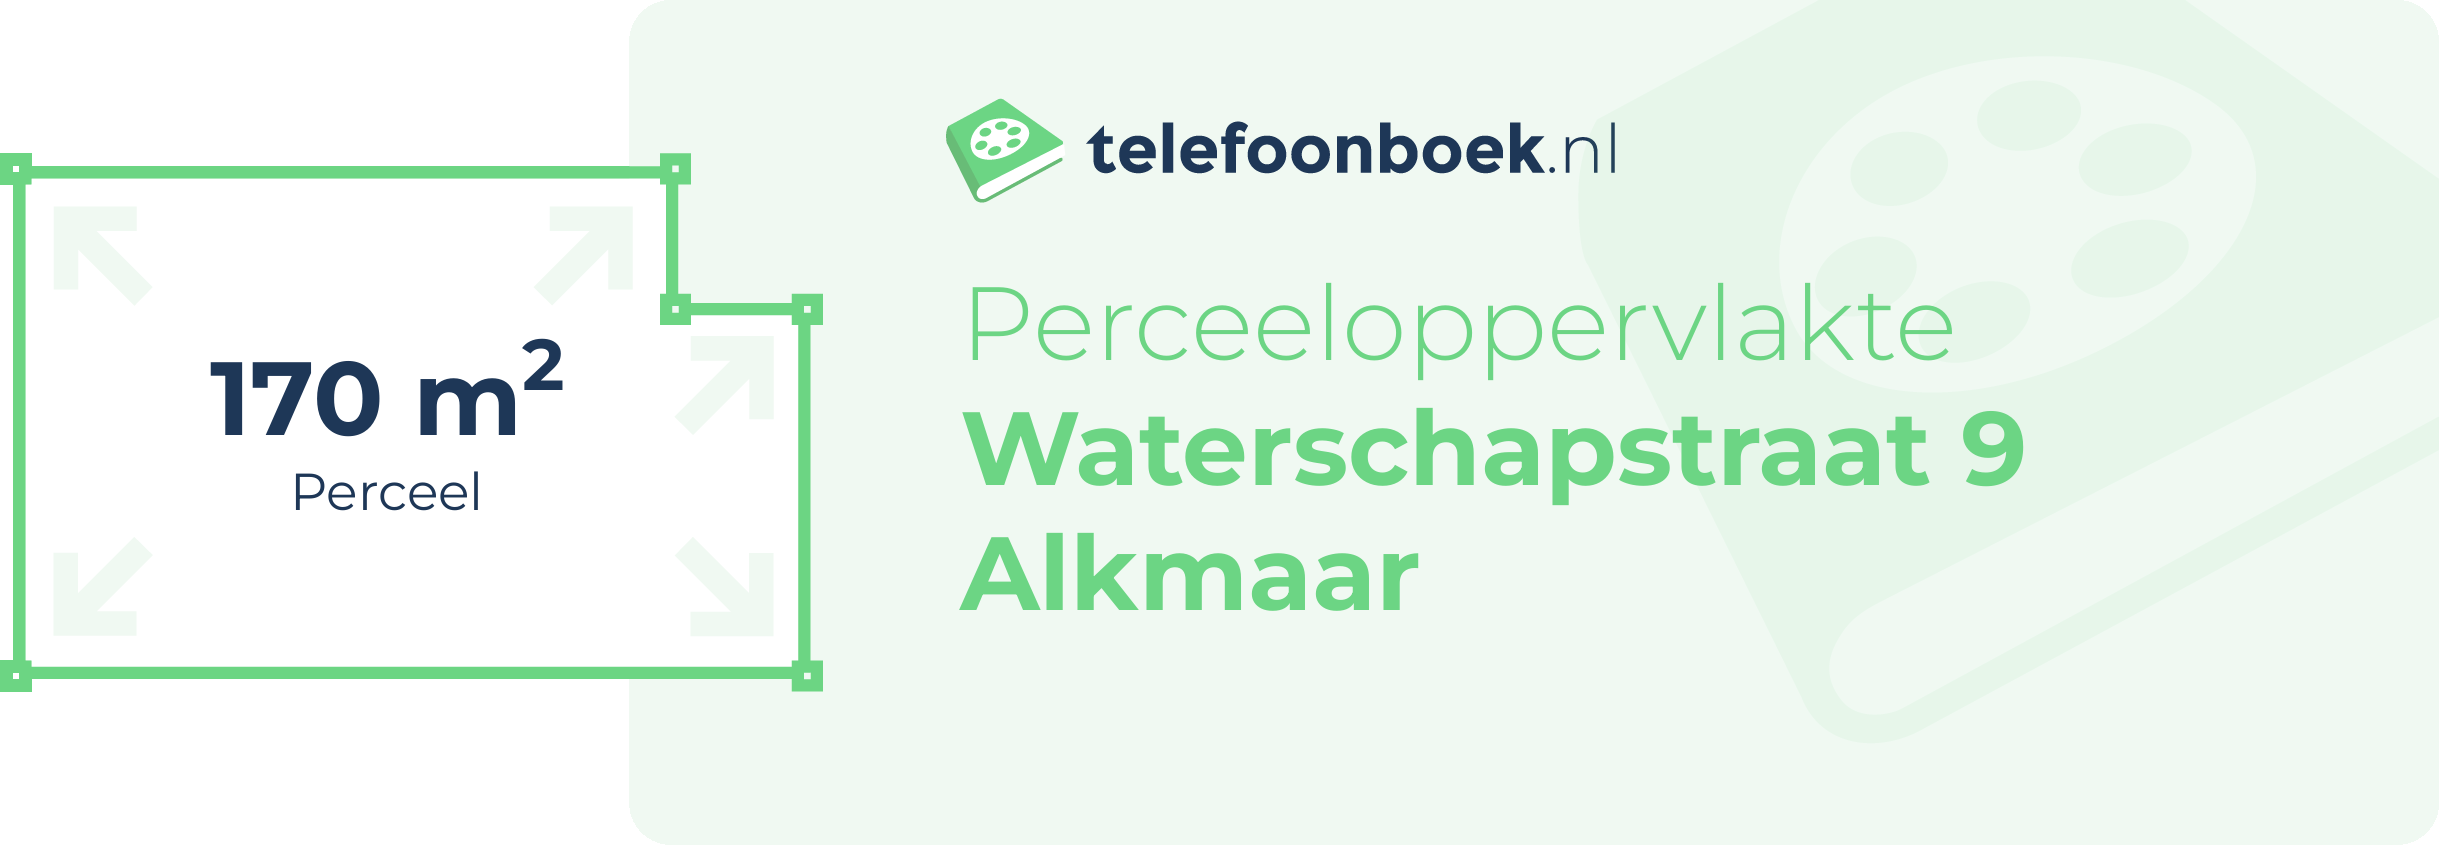 Perceeloppervlakte Waterschapstraat 9 Alkmaar